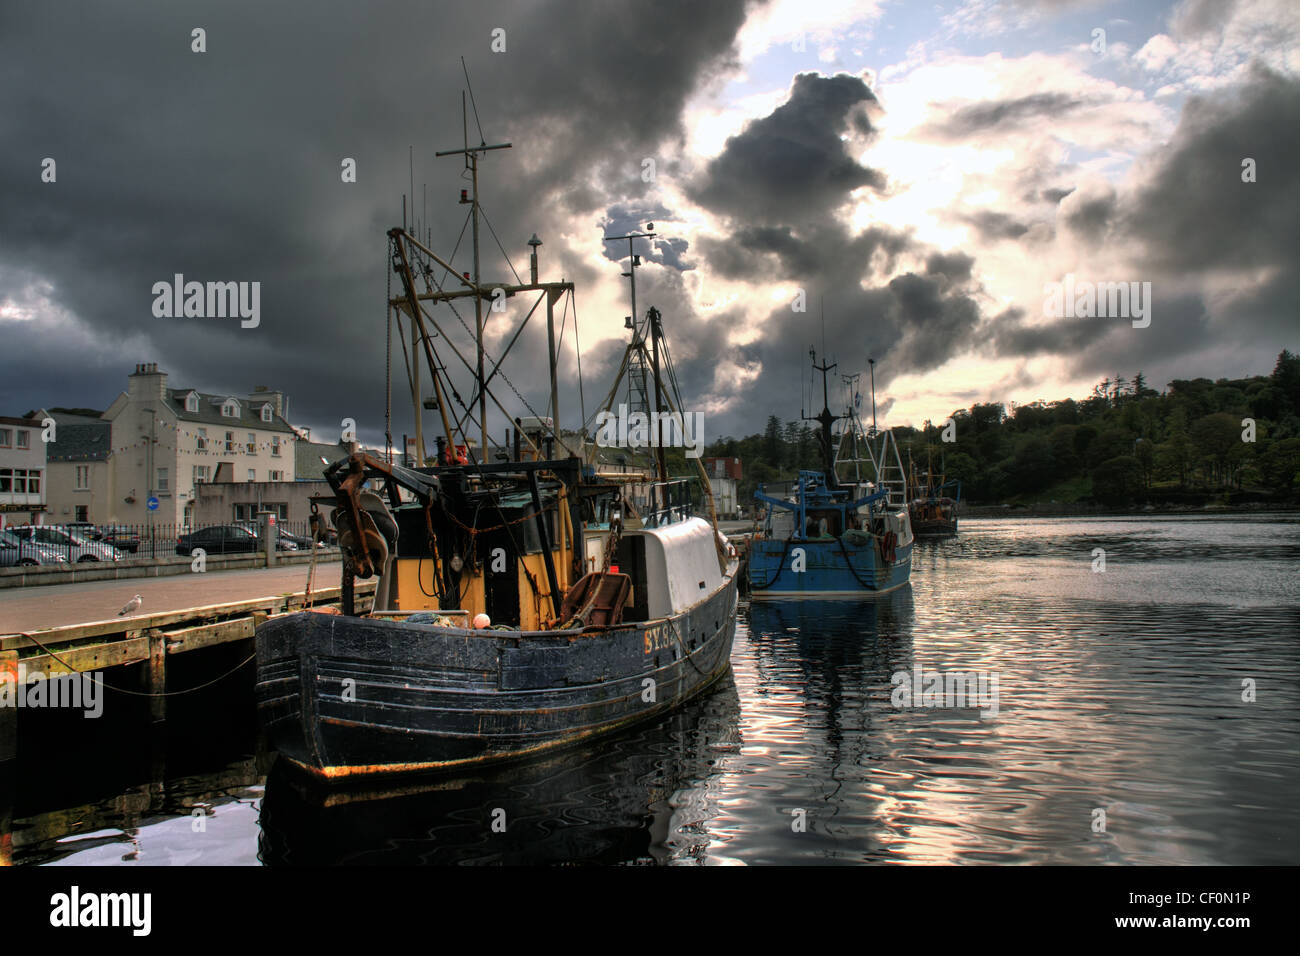 Les bateaux de pêche traditionnels et un ciel dramatique à Stornoway port, Western Isles, Ecosse, Royaume-Uni Banque D'Images